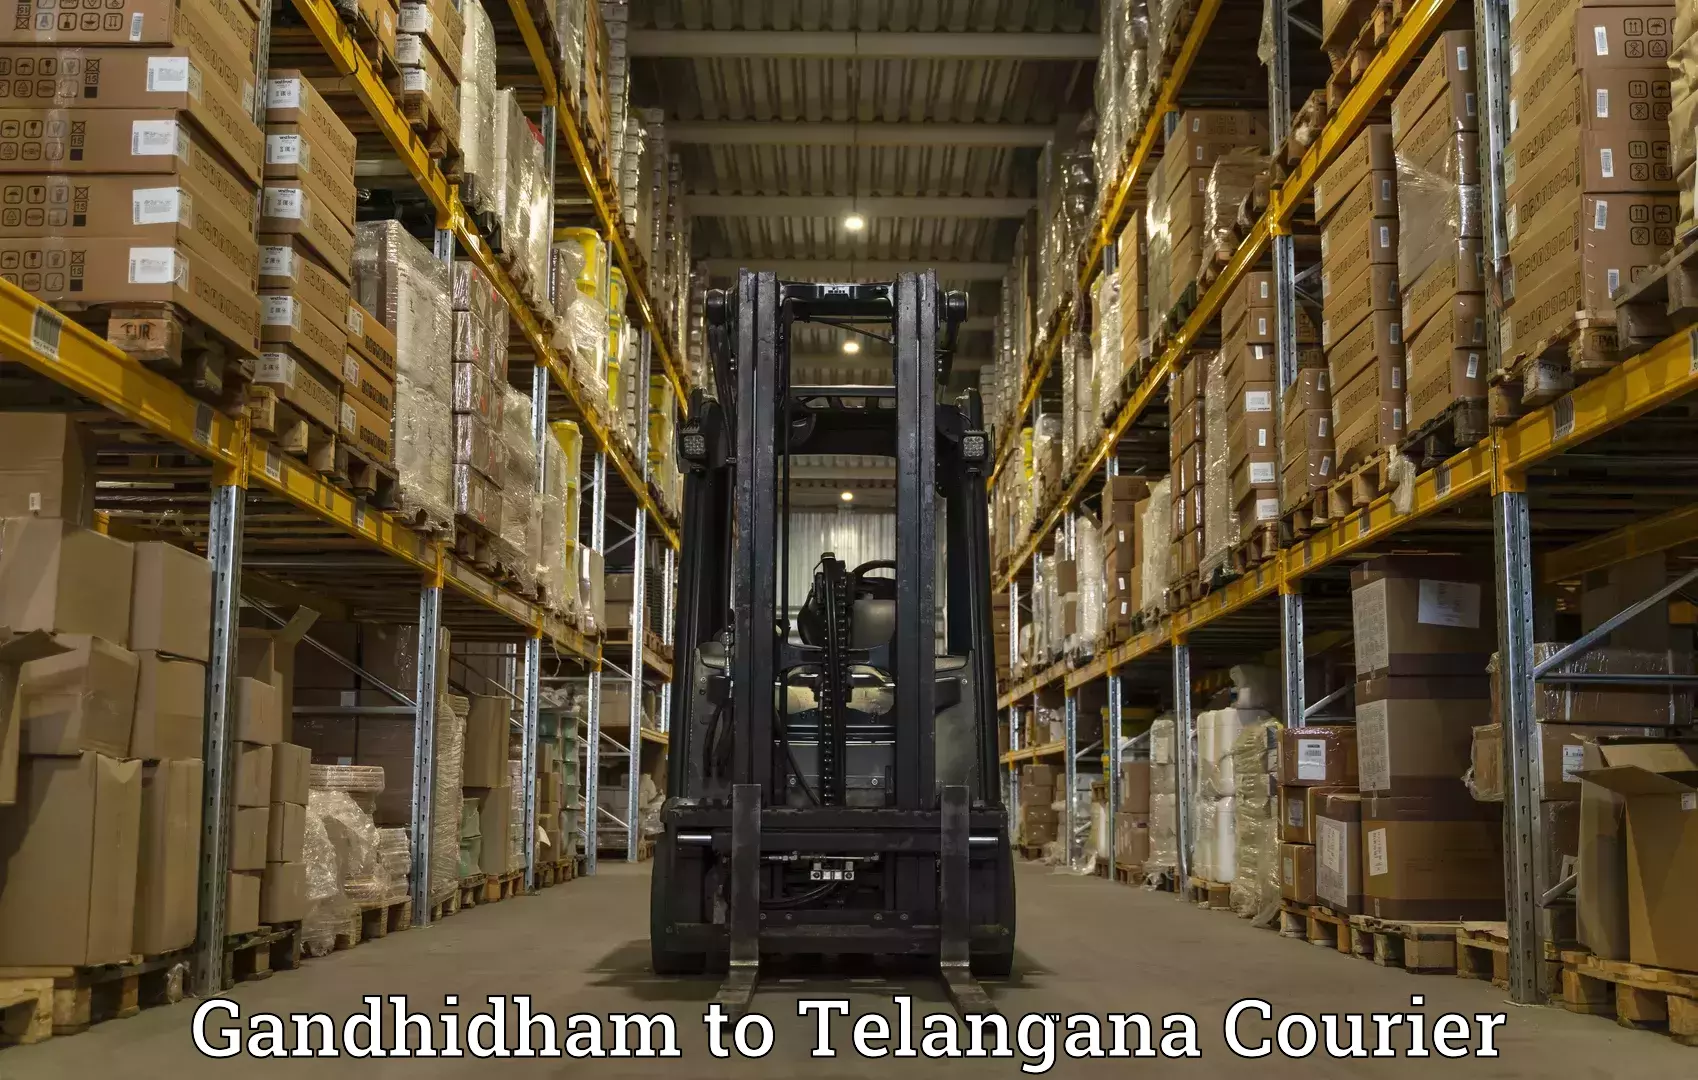 Courier insurance Gandhidham to Bhadrachalam